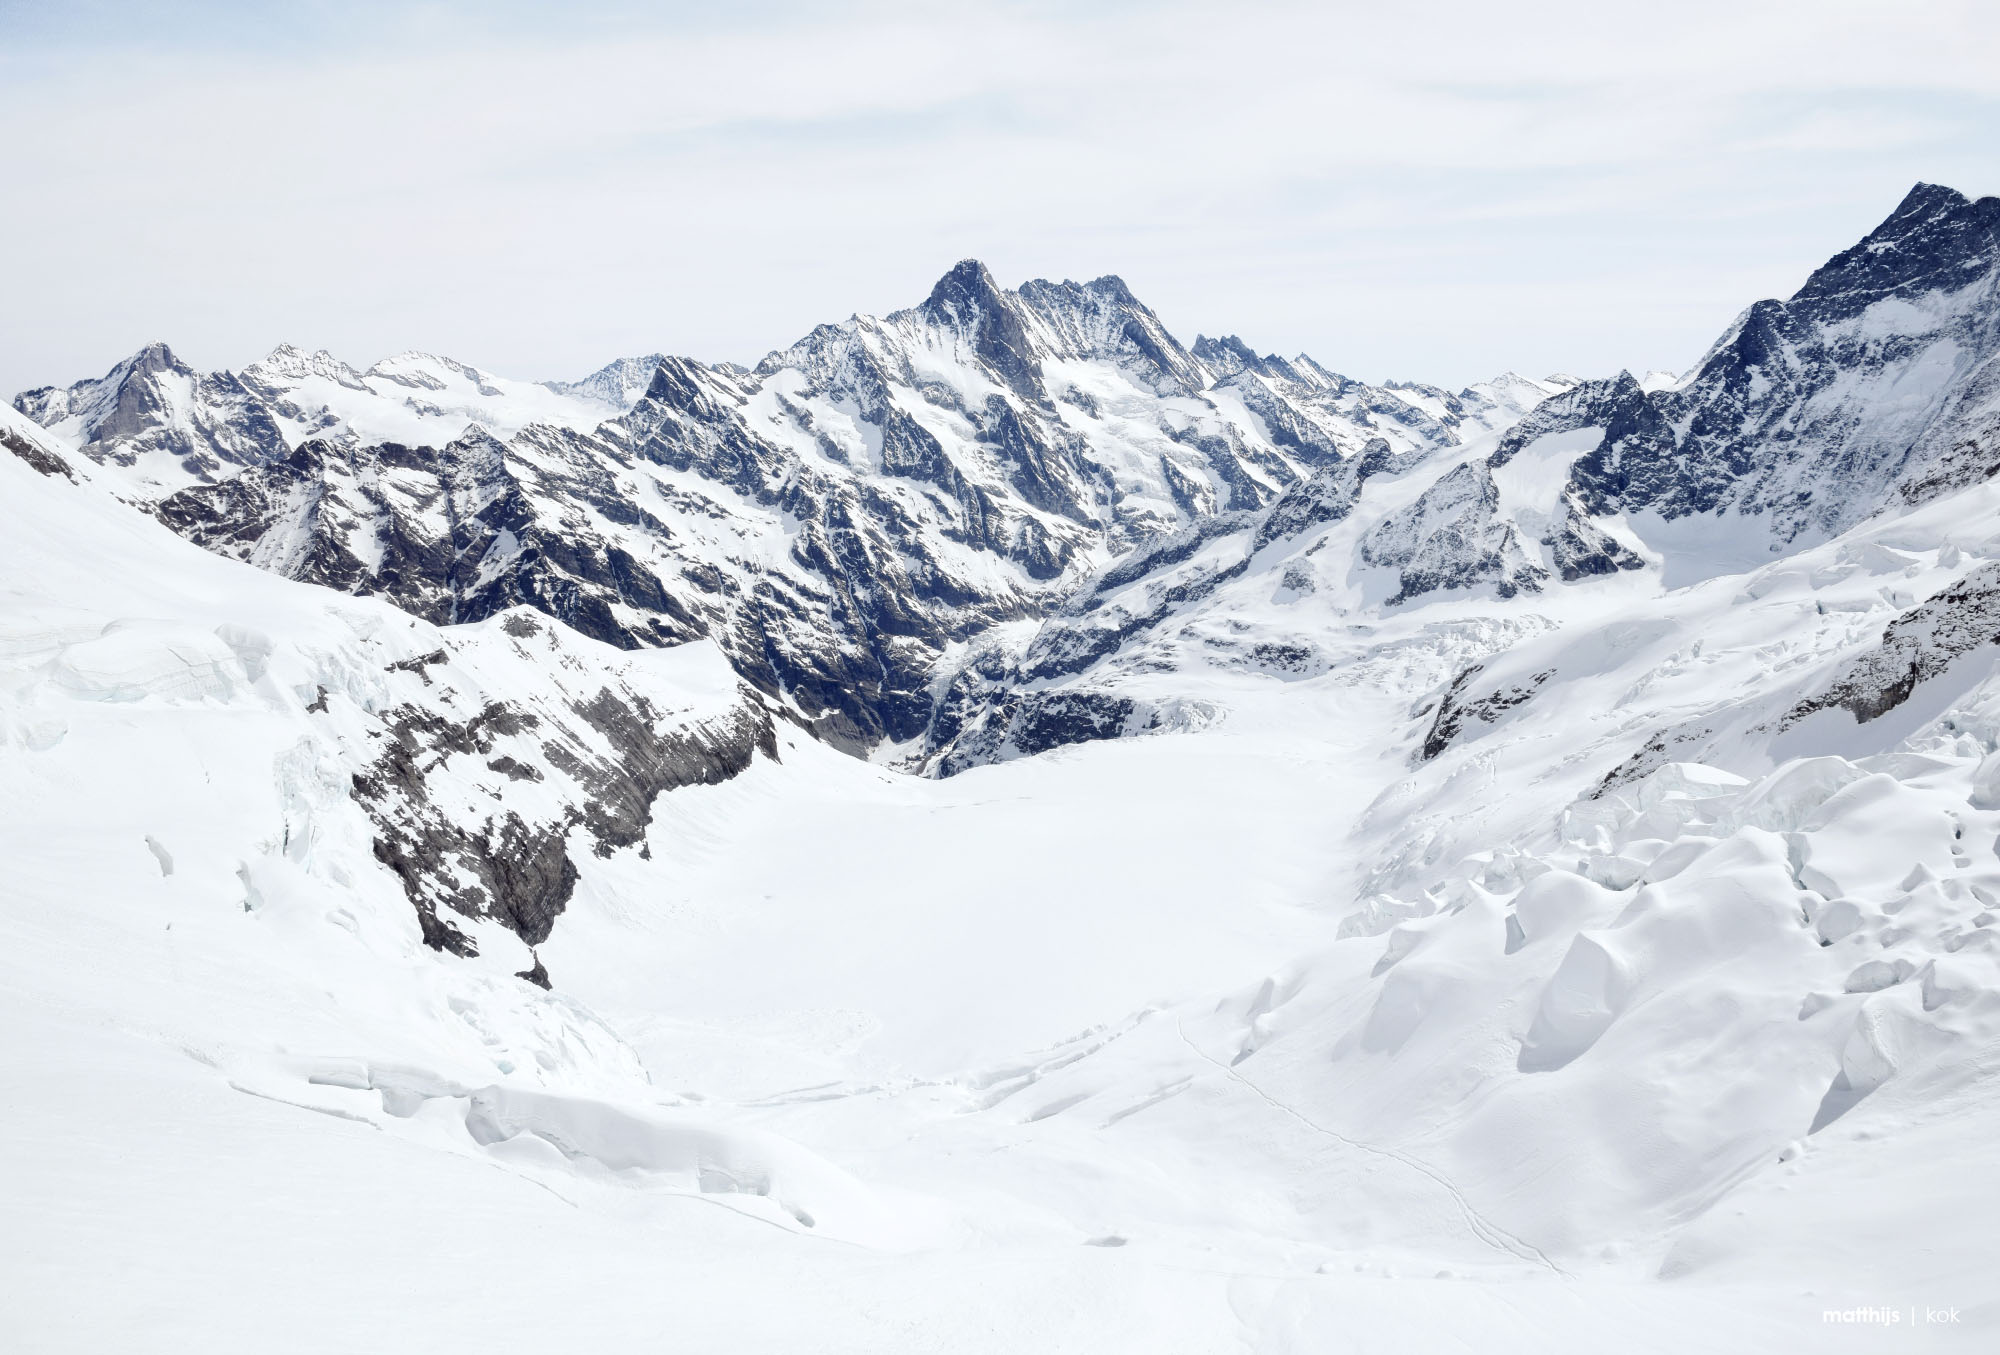 Aletsch Glacier, Jungfraujoch Swiss Alps, Switzerland | Photo by Matthijs Kok